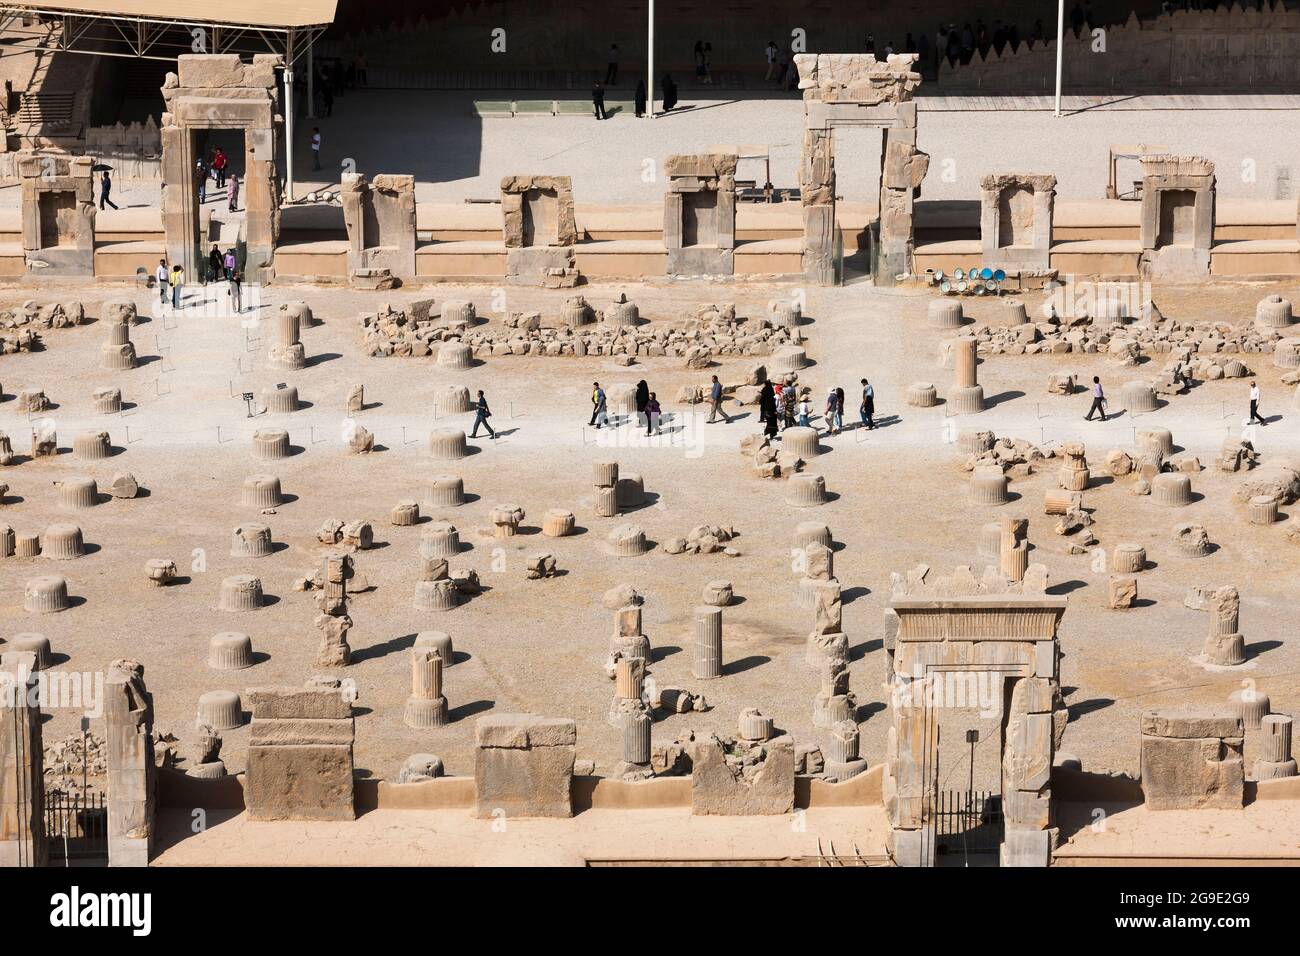 Persepolis, Palast von 100 Säulen, alte zeremonielle Hauptstadt des Achaemeniden Reiches, Vorort von Shiraz, Fars Provinz, Iran, Persien, Westasien, Asien Stockfoto